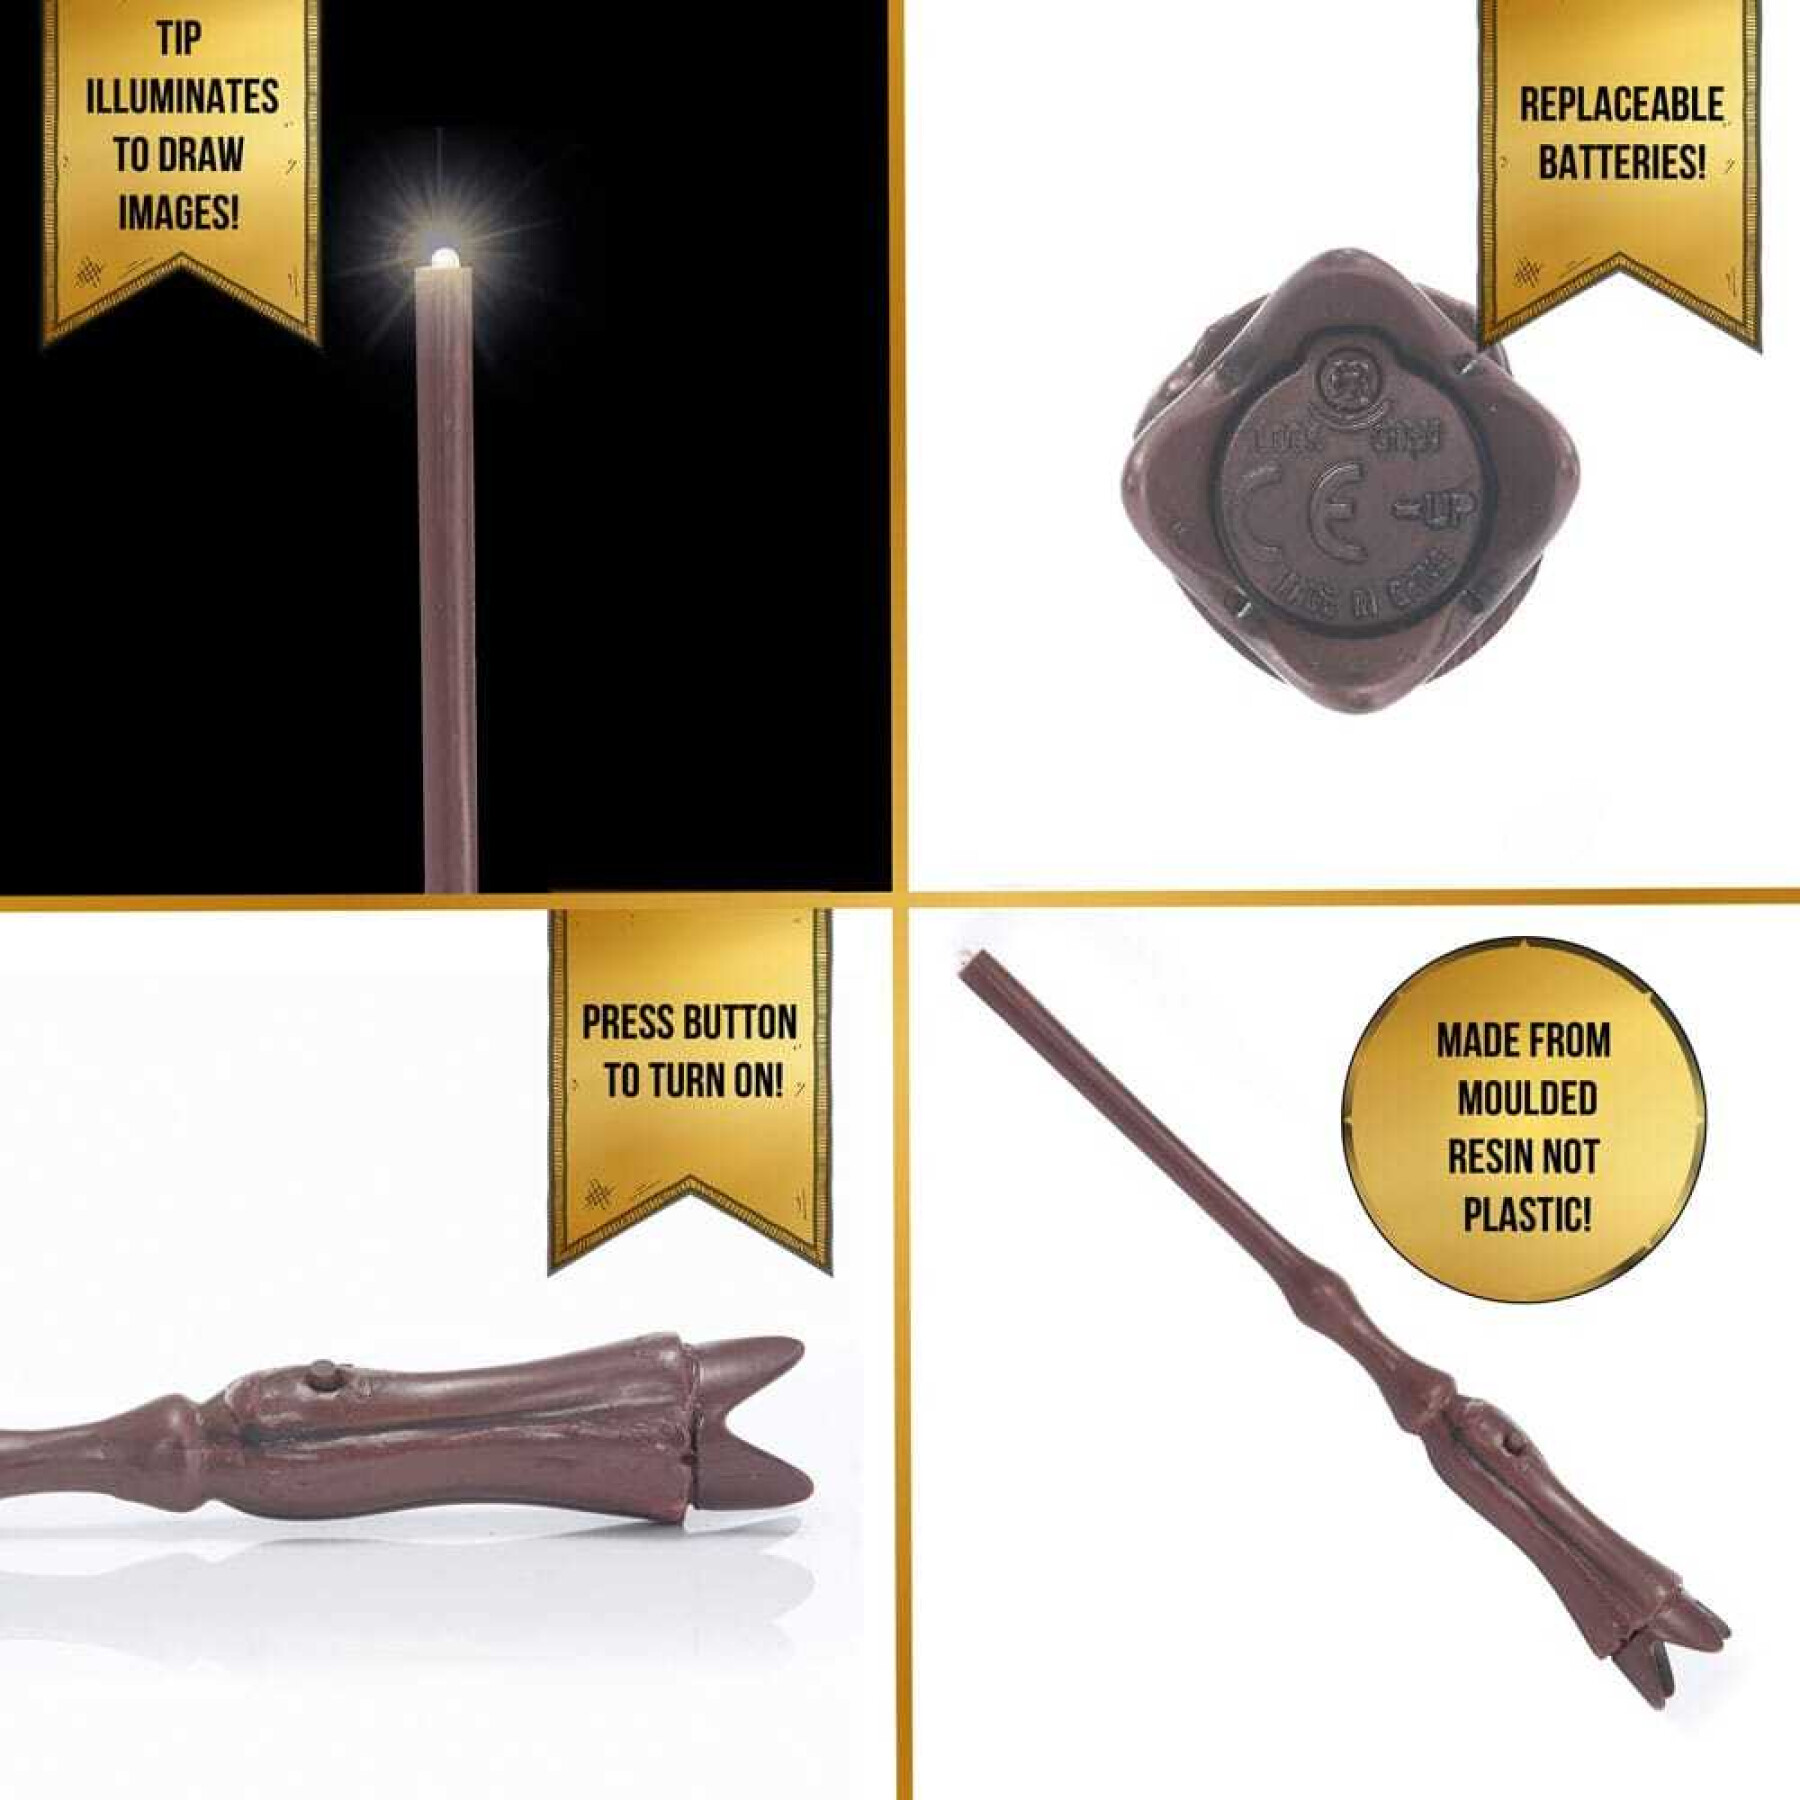 Light painter's magic wand Wow! Stuff Harry Potter